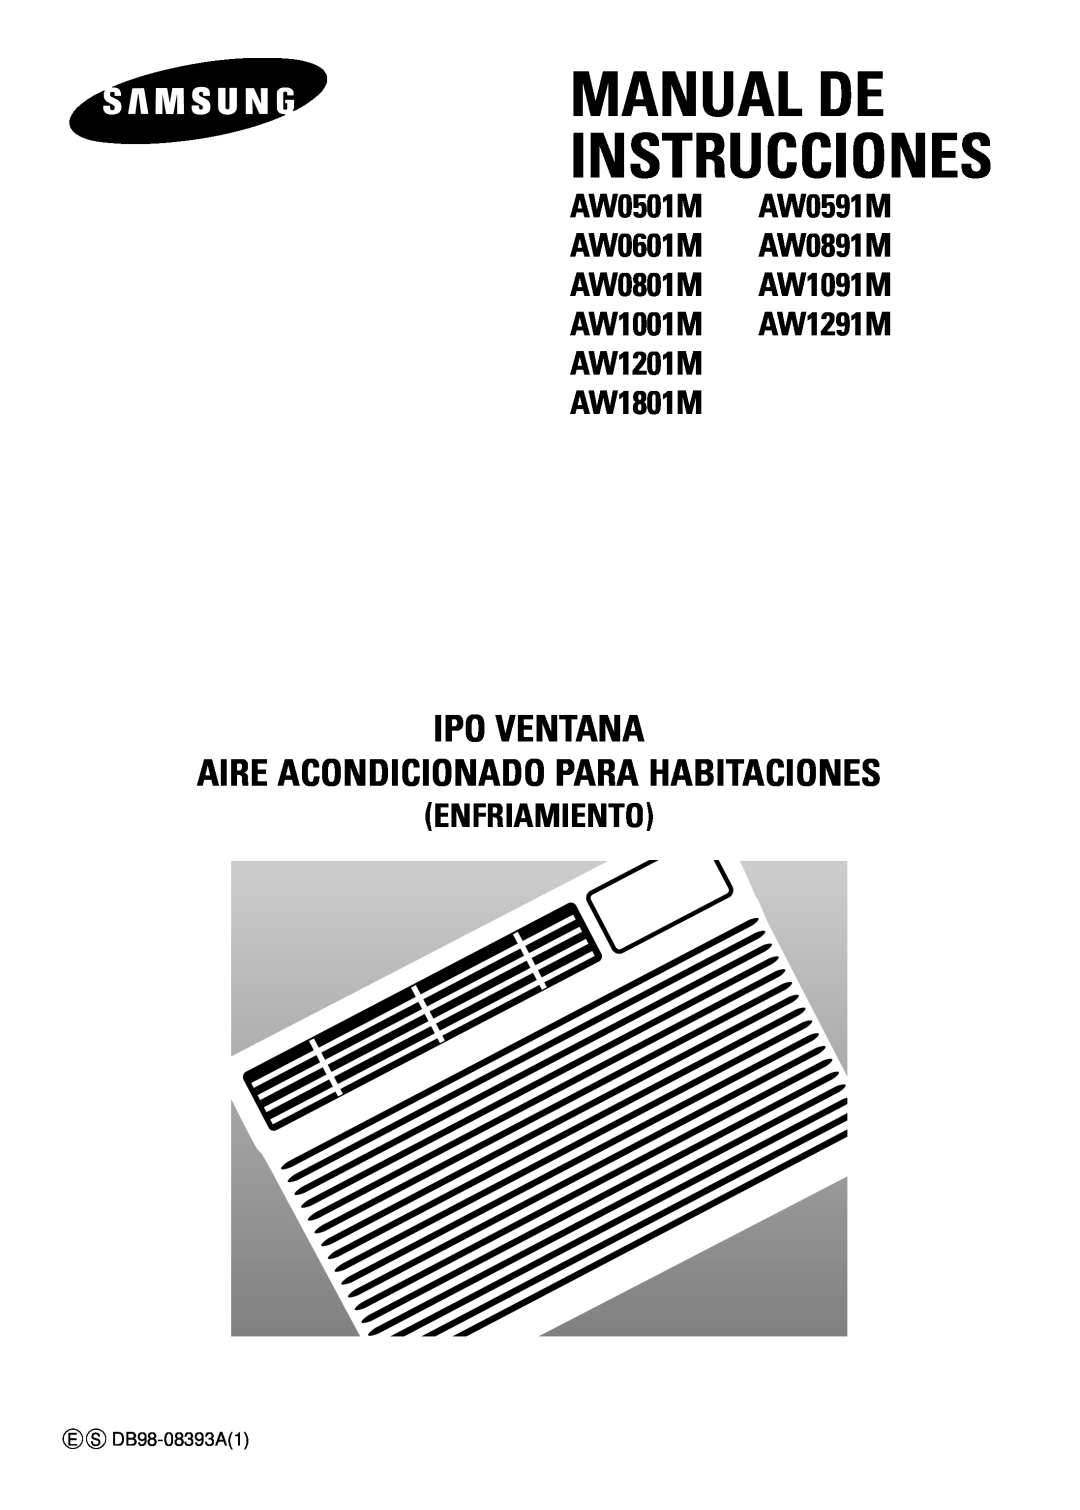 Samsung AW1201M, AW0591M manual Manual De Instrucciones, Ipo Ventana Aire Acondicionado Para Habitaciones, Enfriamiento 